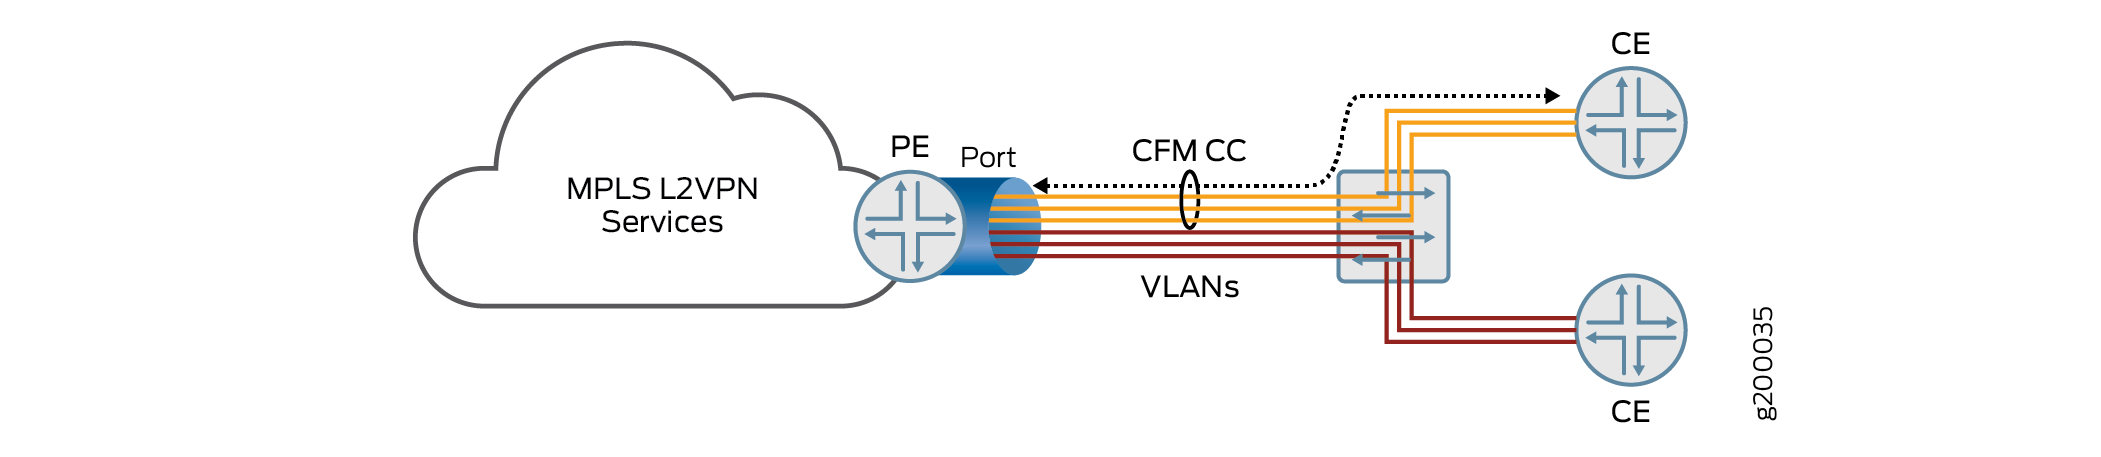 Topologia de vários serviços VLAN compartilhando uma única porta no roteador PE destinada a vários roteadores CE